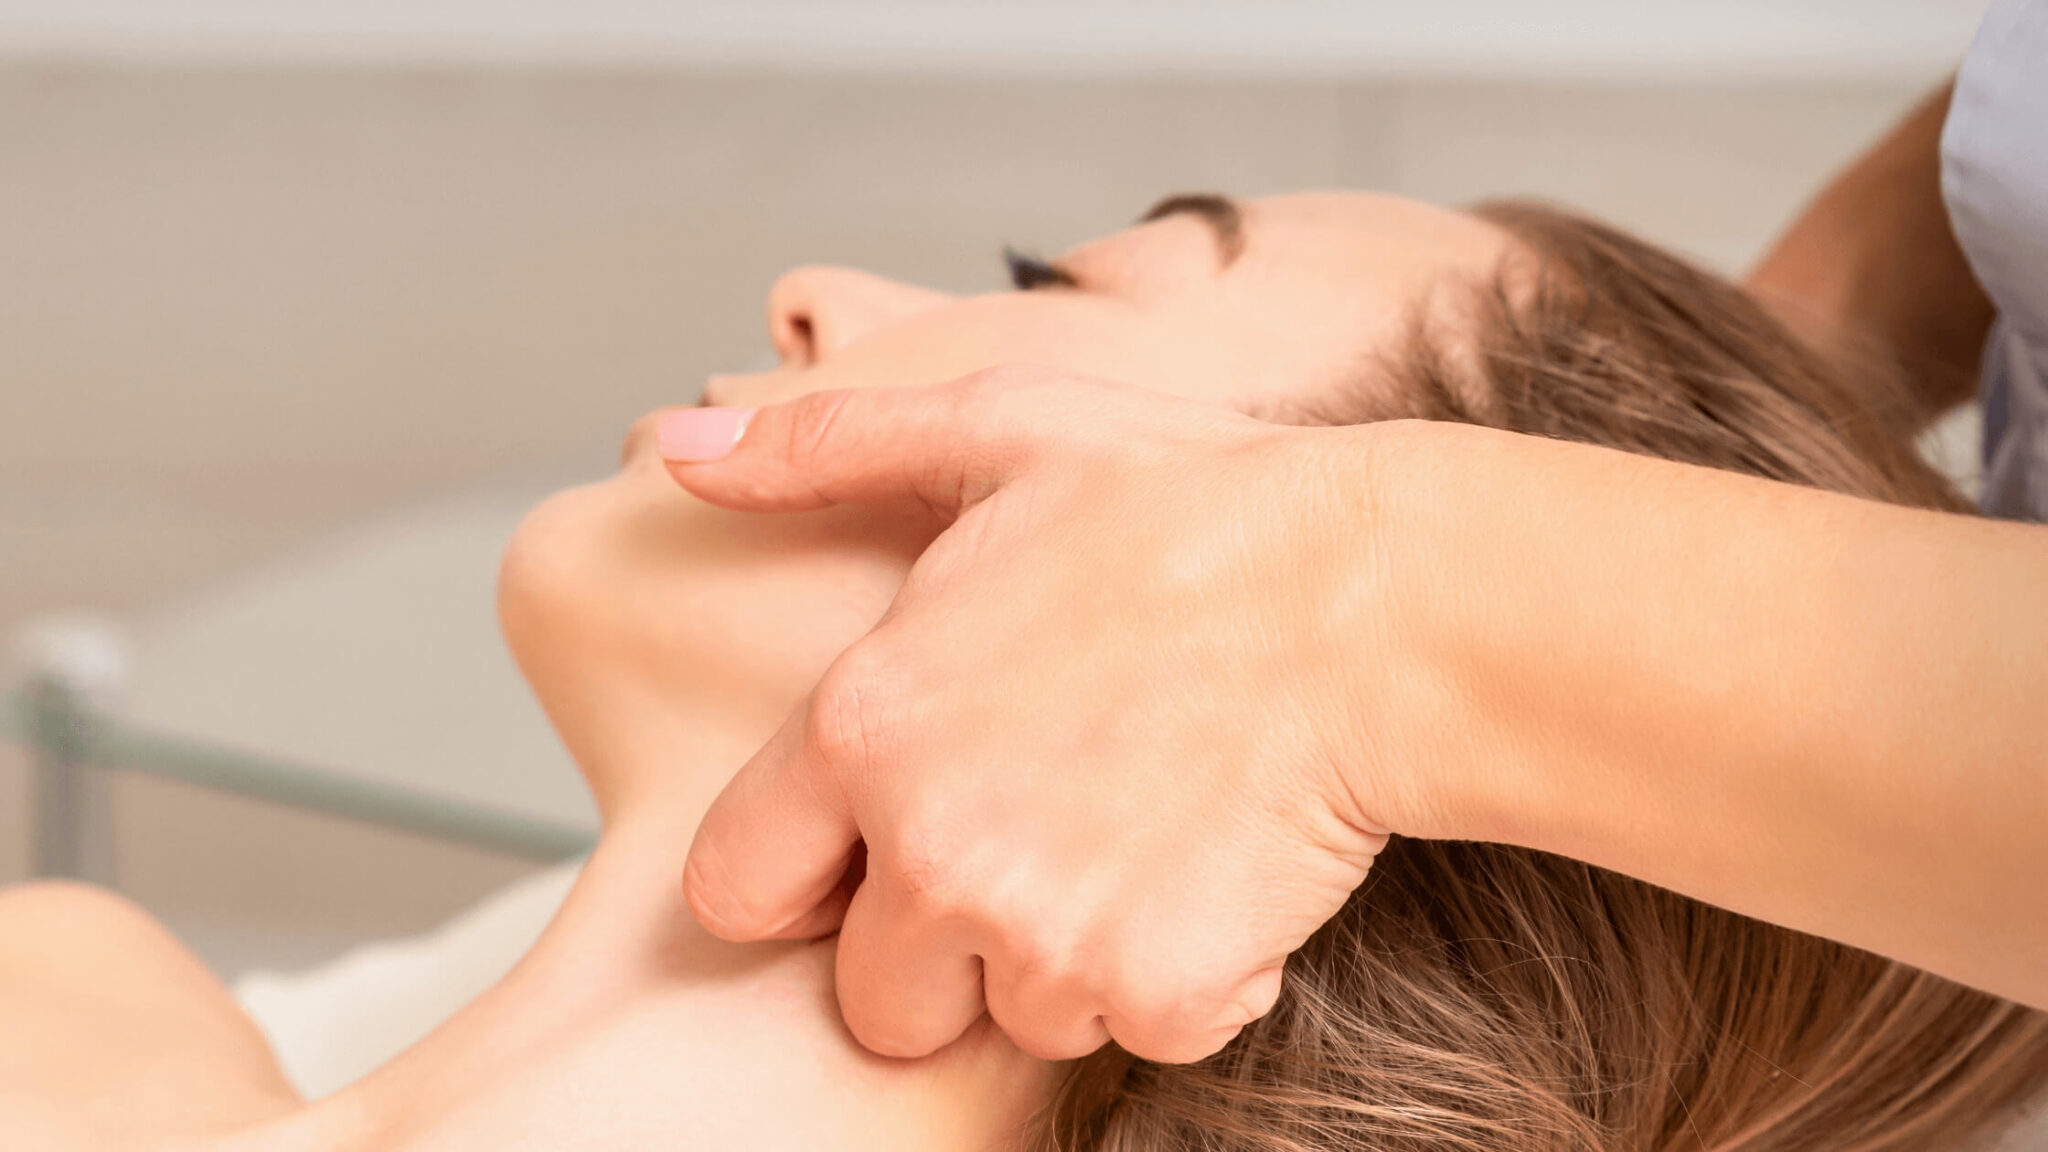 Fisioterapeuta realizando masaje de Drenaje Linfático Manual a un paciente